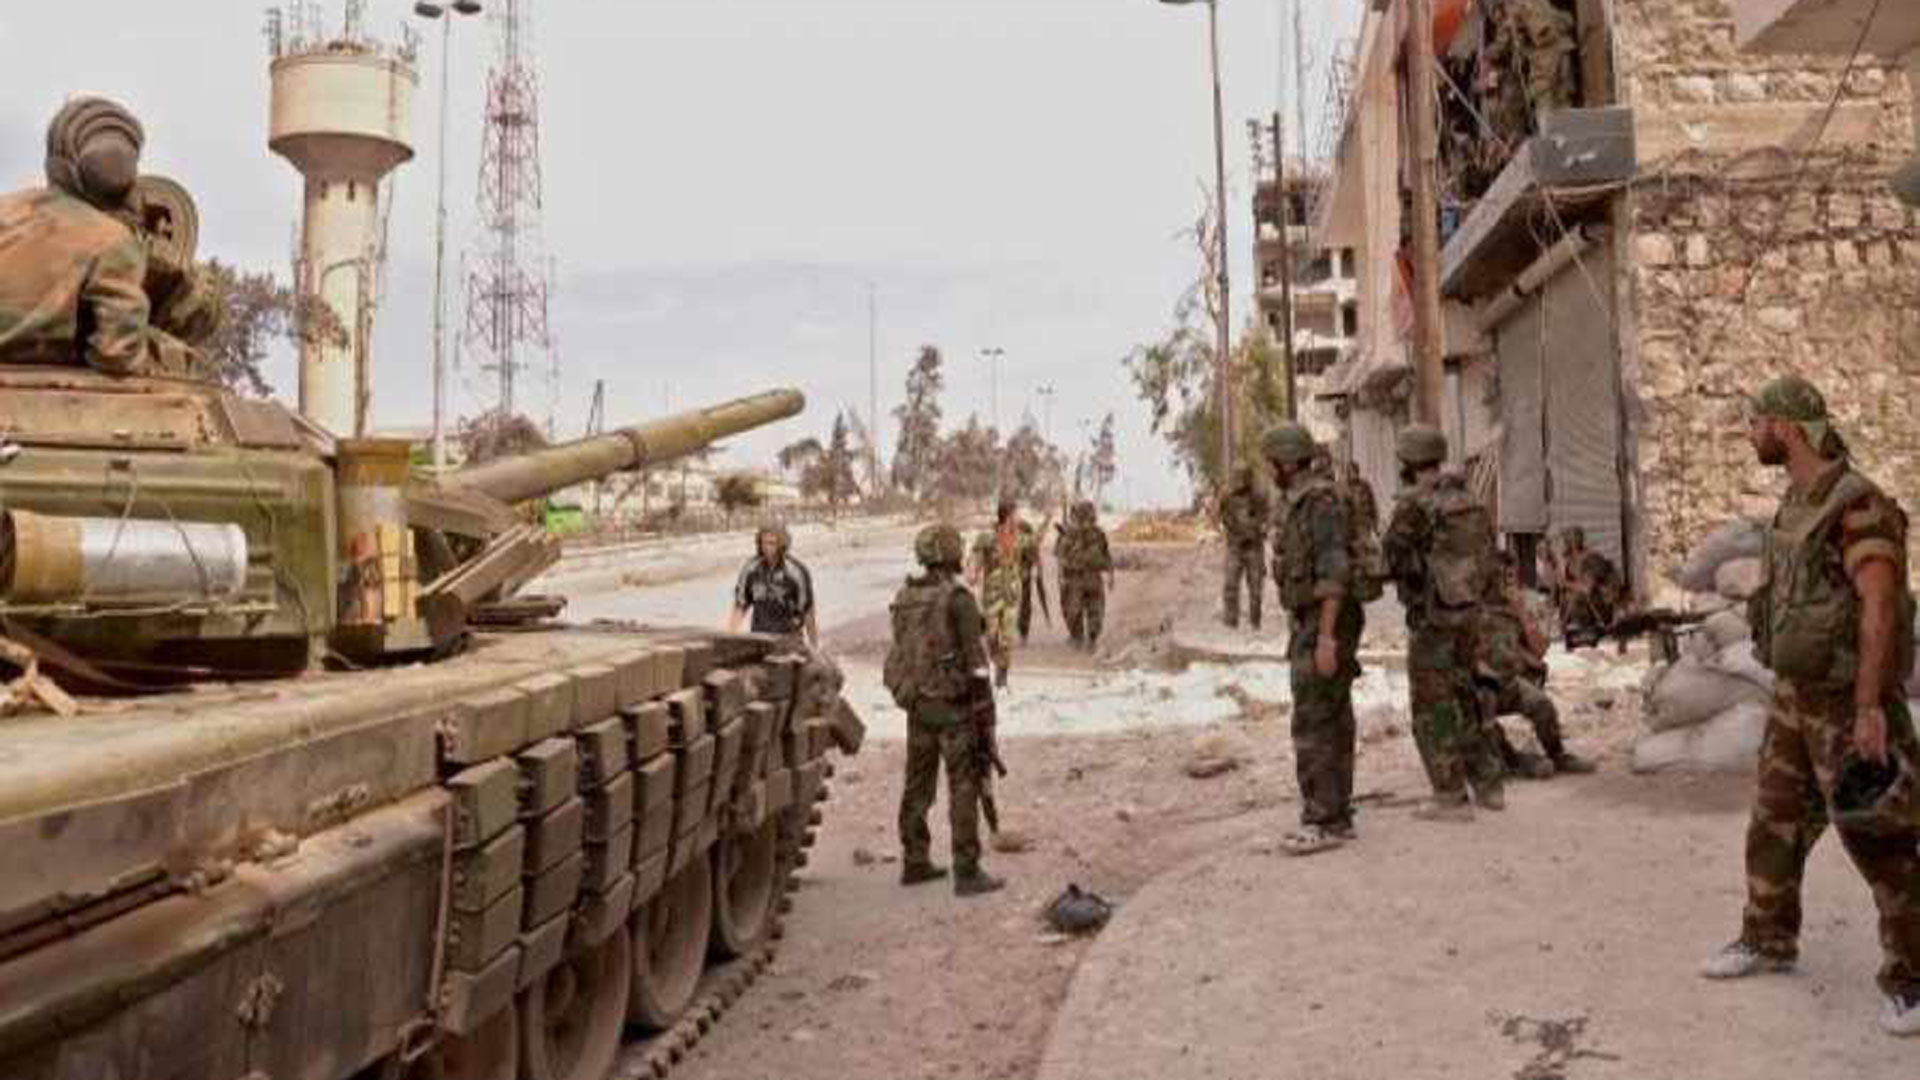 Ejército sirio expulsa al Estado Islámico de la provincia de Hama